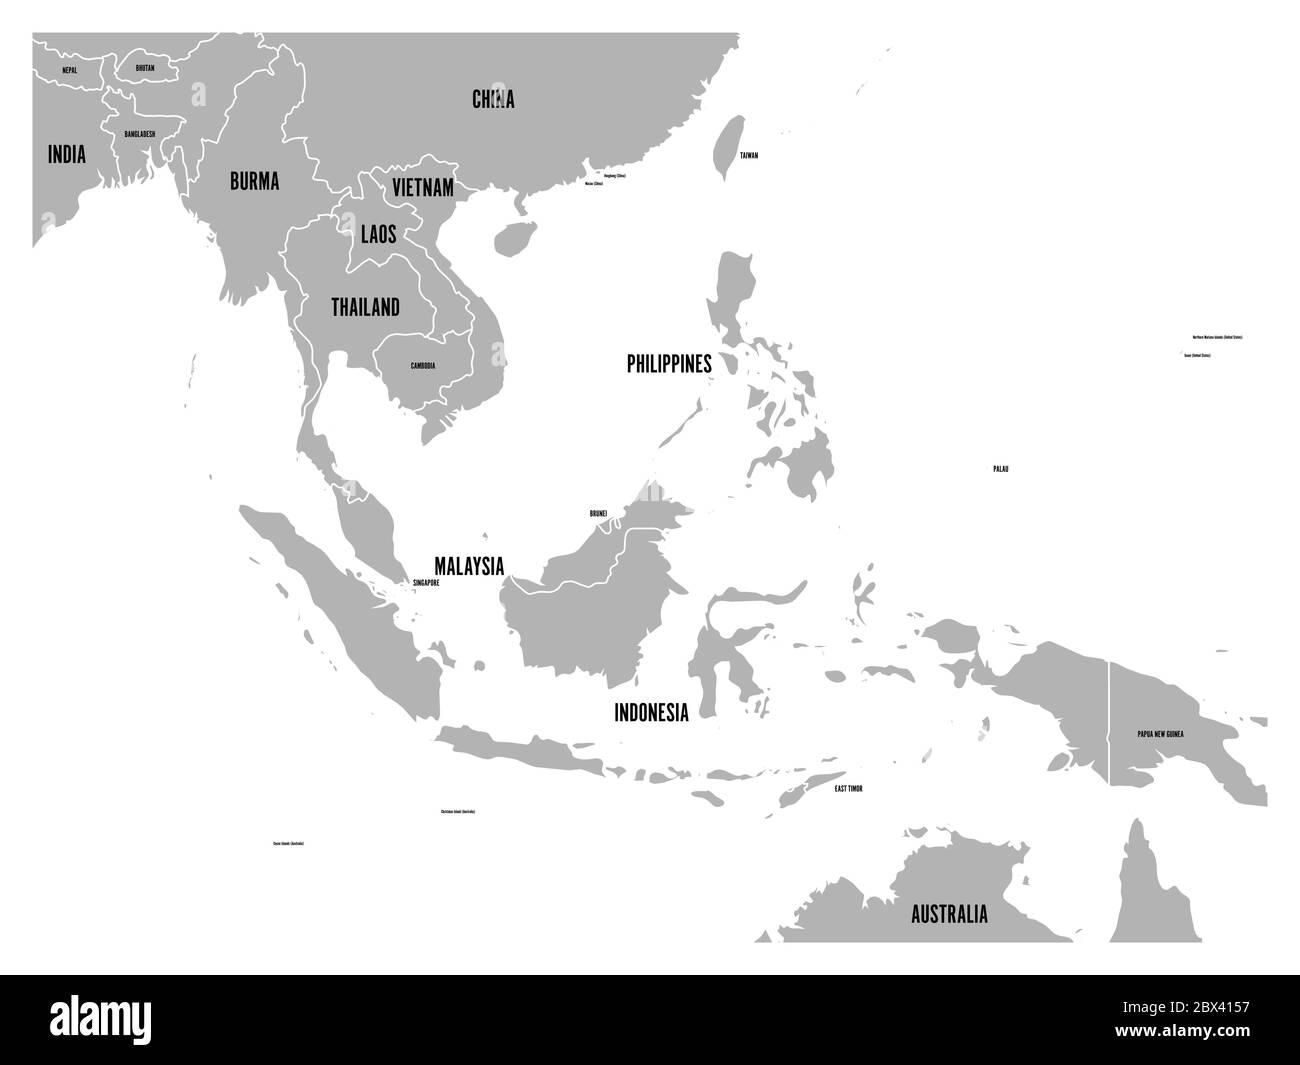 Carte politique de l'Asie du Sud-est. Terre grise sur fond blanc avec des étiquettes de nom de pays noires. Illustration simple à vecteur plat. Illustration de Vecteur